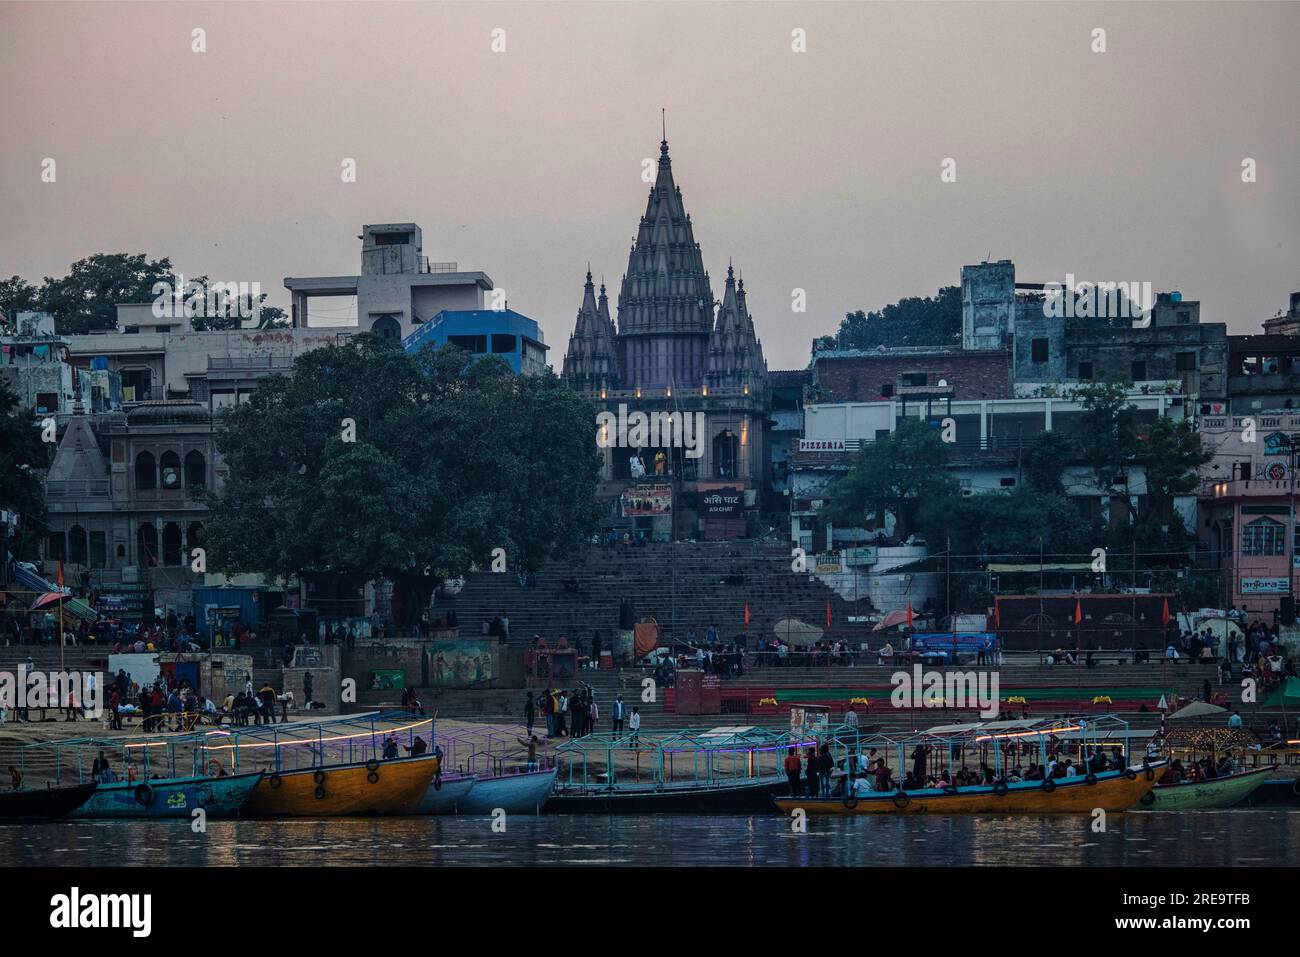 Les gens préparent des bûchers funéraires à Varanasi sur les rives du Gange, qui est l'une des plus anciennes villes continuellement habitées dans le monde, et la plus sainte des sept villes sacrées de l'hindouisme. Chaque jour, à Manikarnika Ghat, le ghat de crémation le plus grand et le plus propice, environ 100 corps sont incinérés sur des bûchers en bois le long du bord de la rivière. On dit que la flamme éternelle qui alimente les feux brûle depuis des siècles maintenant. Varanasi, Inde. Banque D'Images